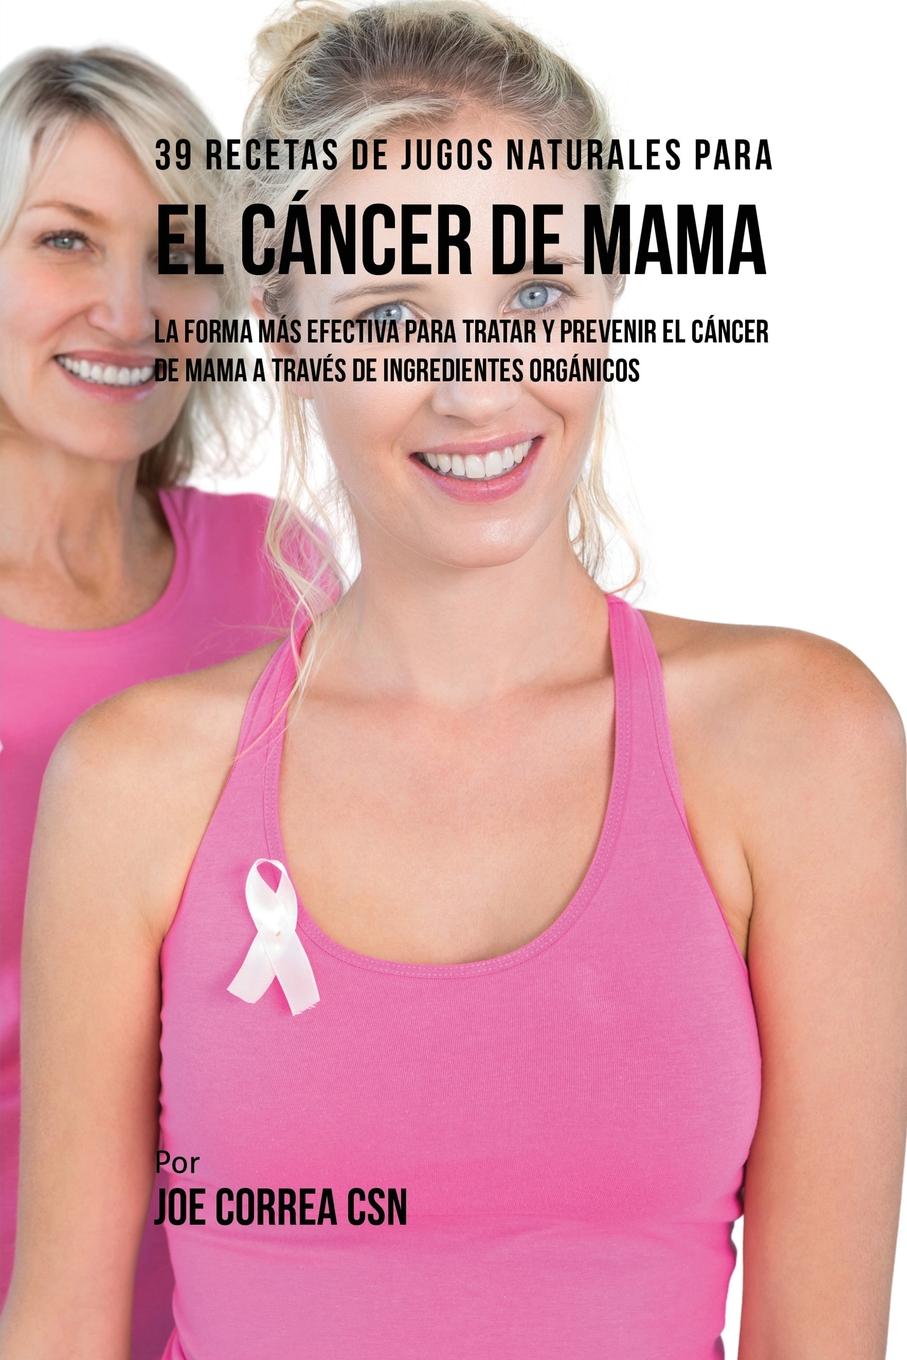 Joe Correa 39 Recetas de Jugos Naturales Para el Cancer de Mama. La Forma Mas Efectiva Para Tratar y Prevenir el Cancer de Mama a Traves de Ingredientes Organicos